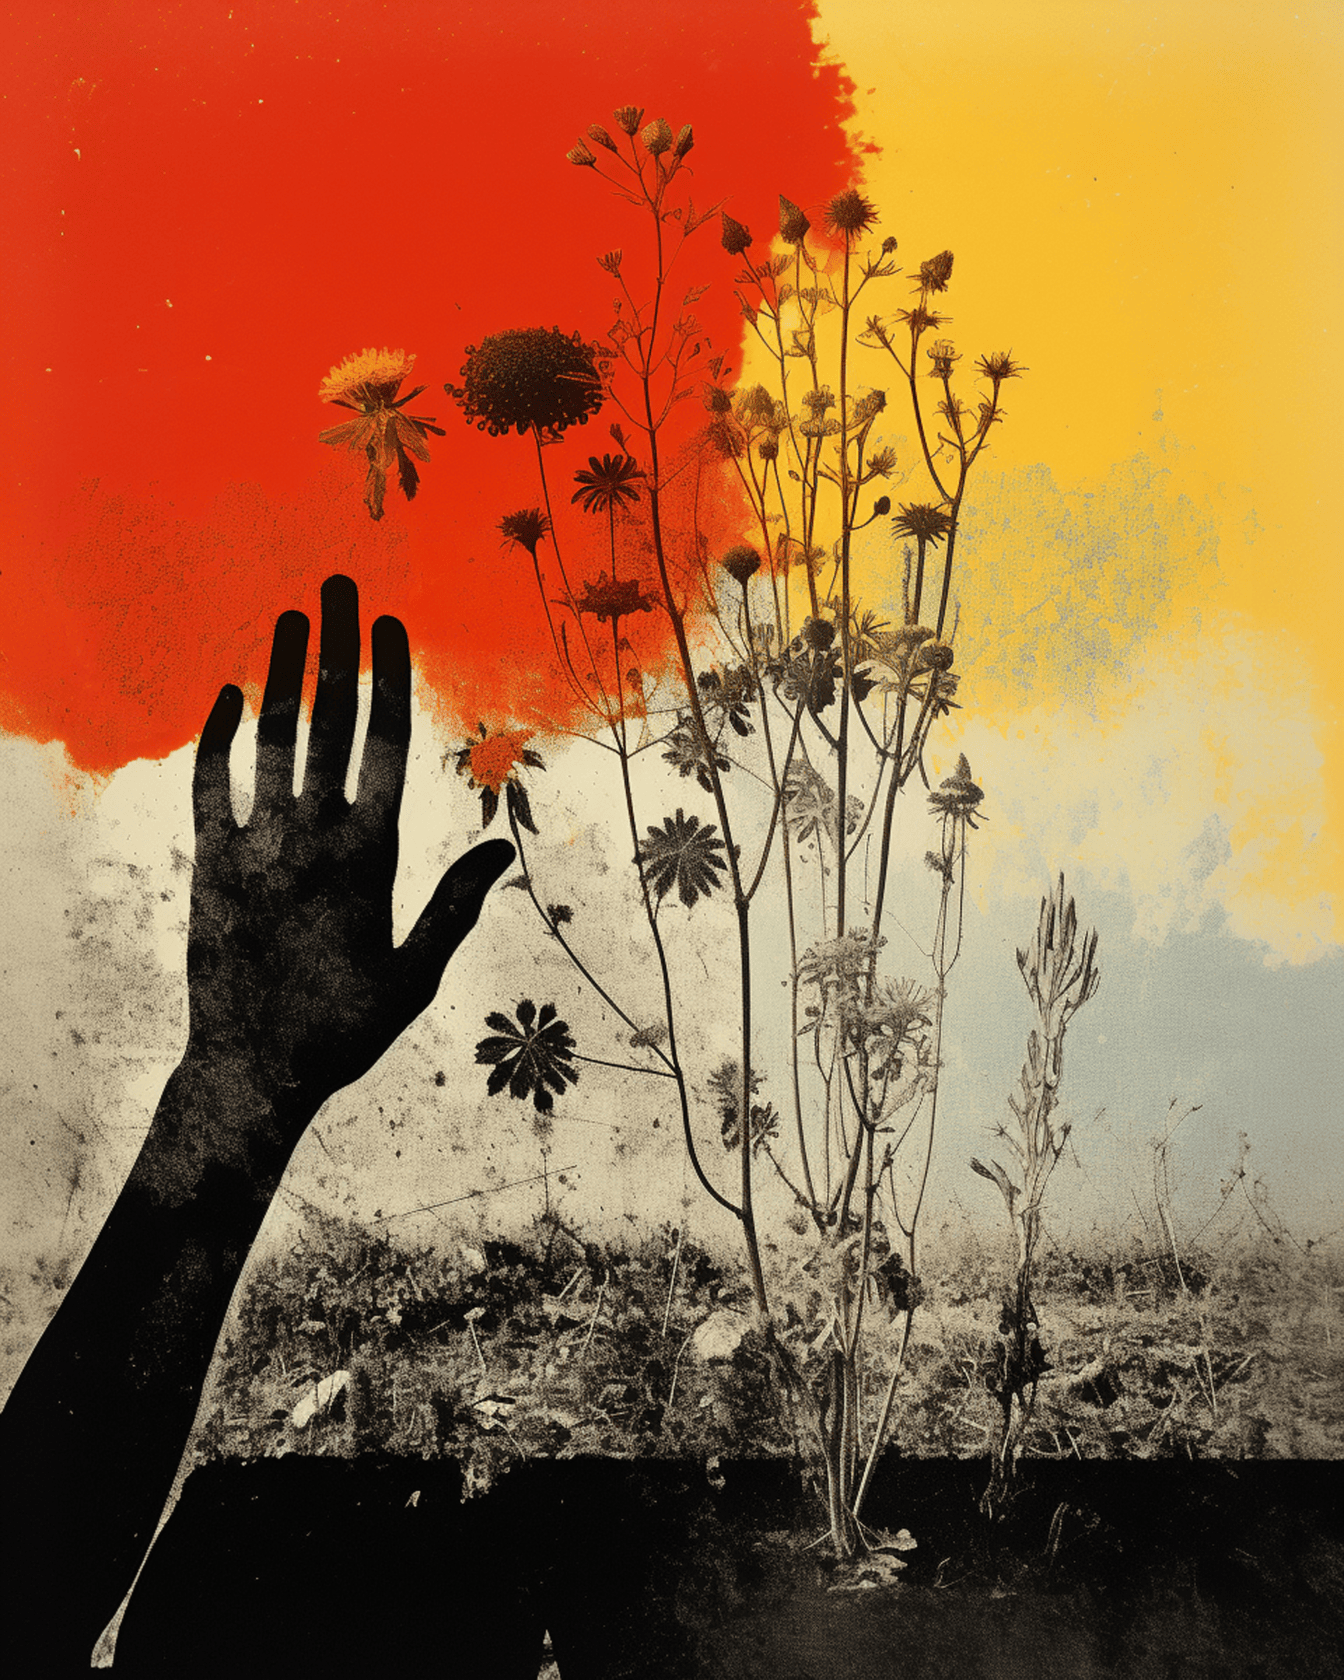 Cyfrowa ilustracja czarnej ręki z pomarańczowym żółtym tłem